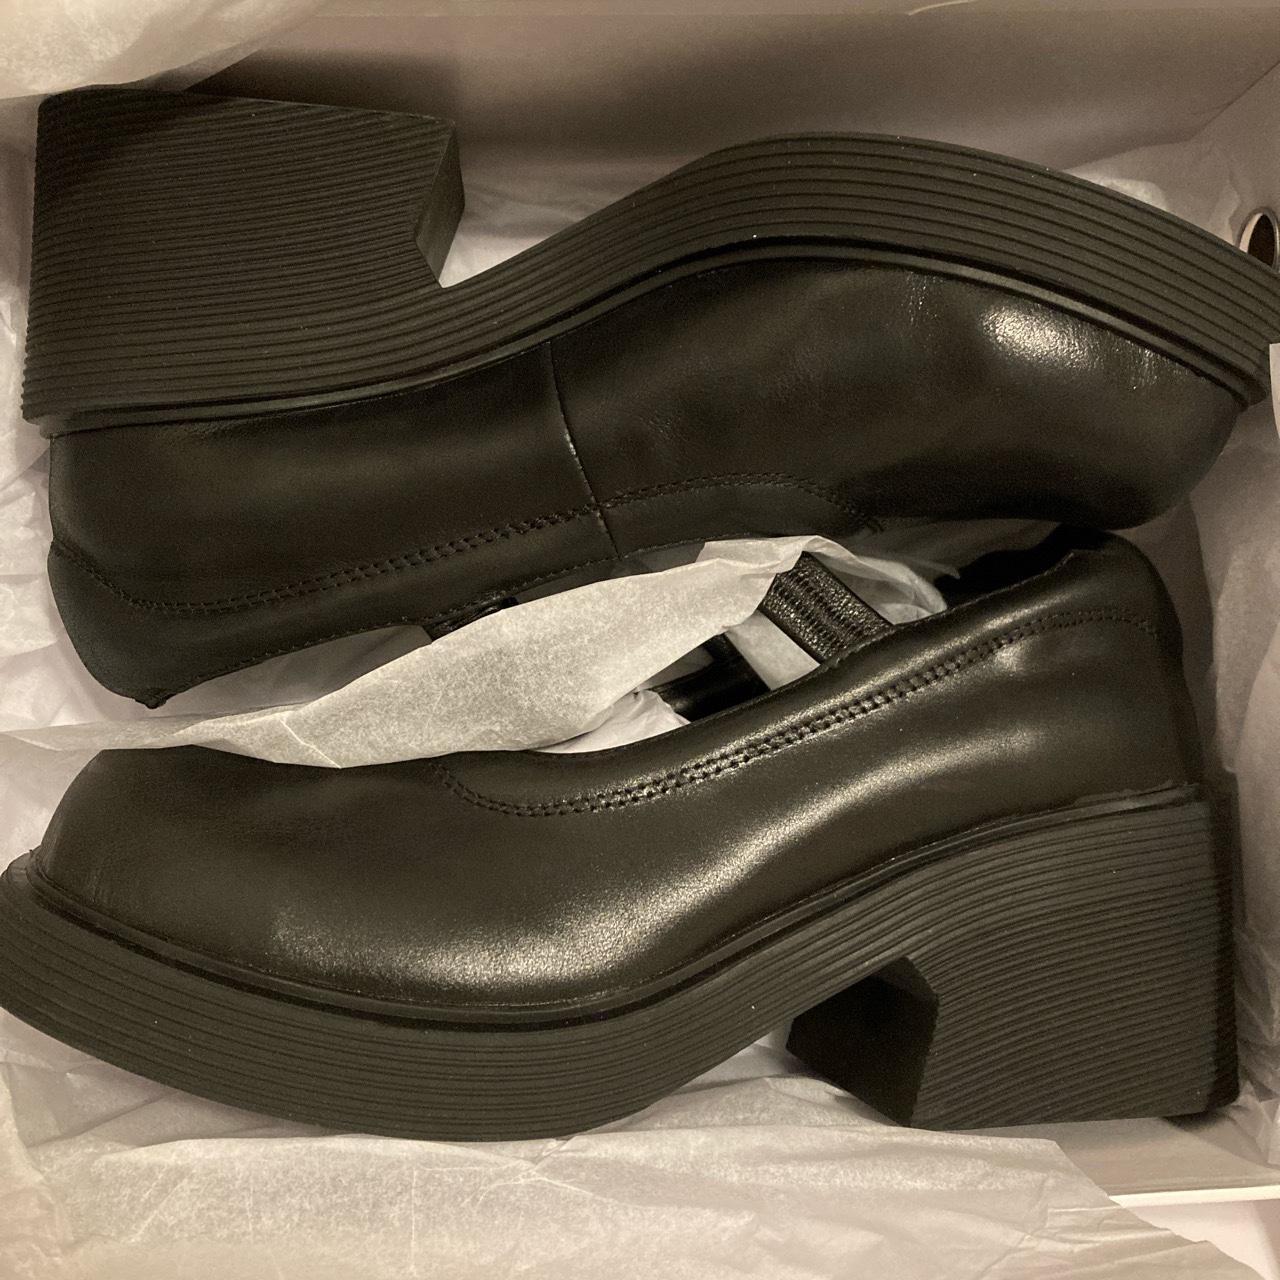 Unif daf mary janes black platform heels shoes 🖤 so... - Depop